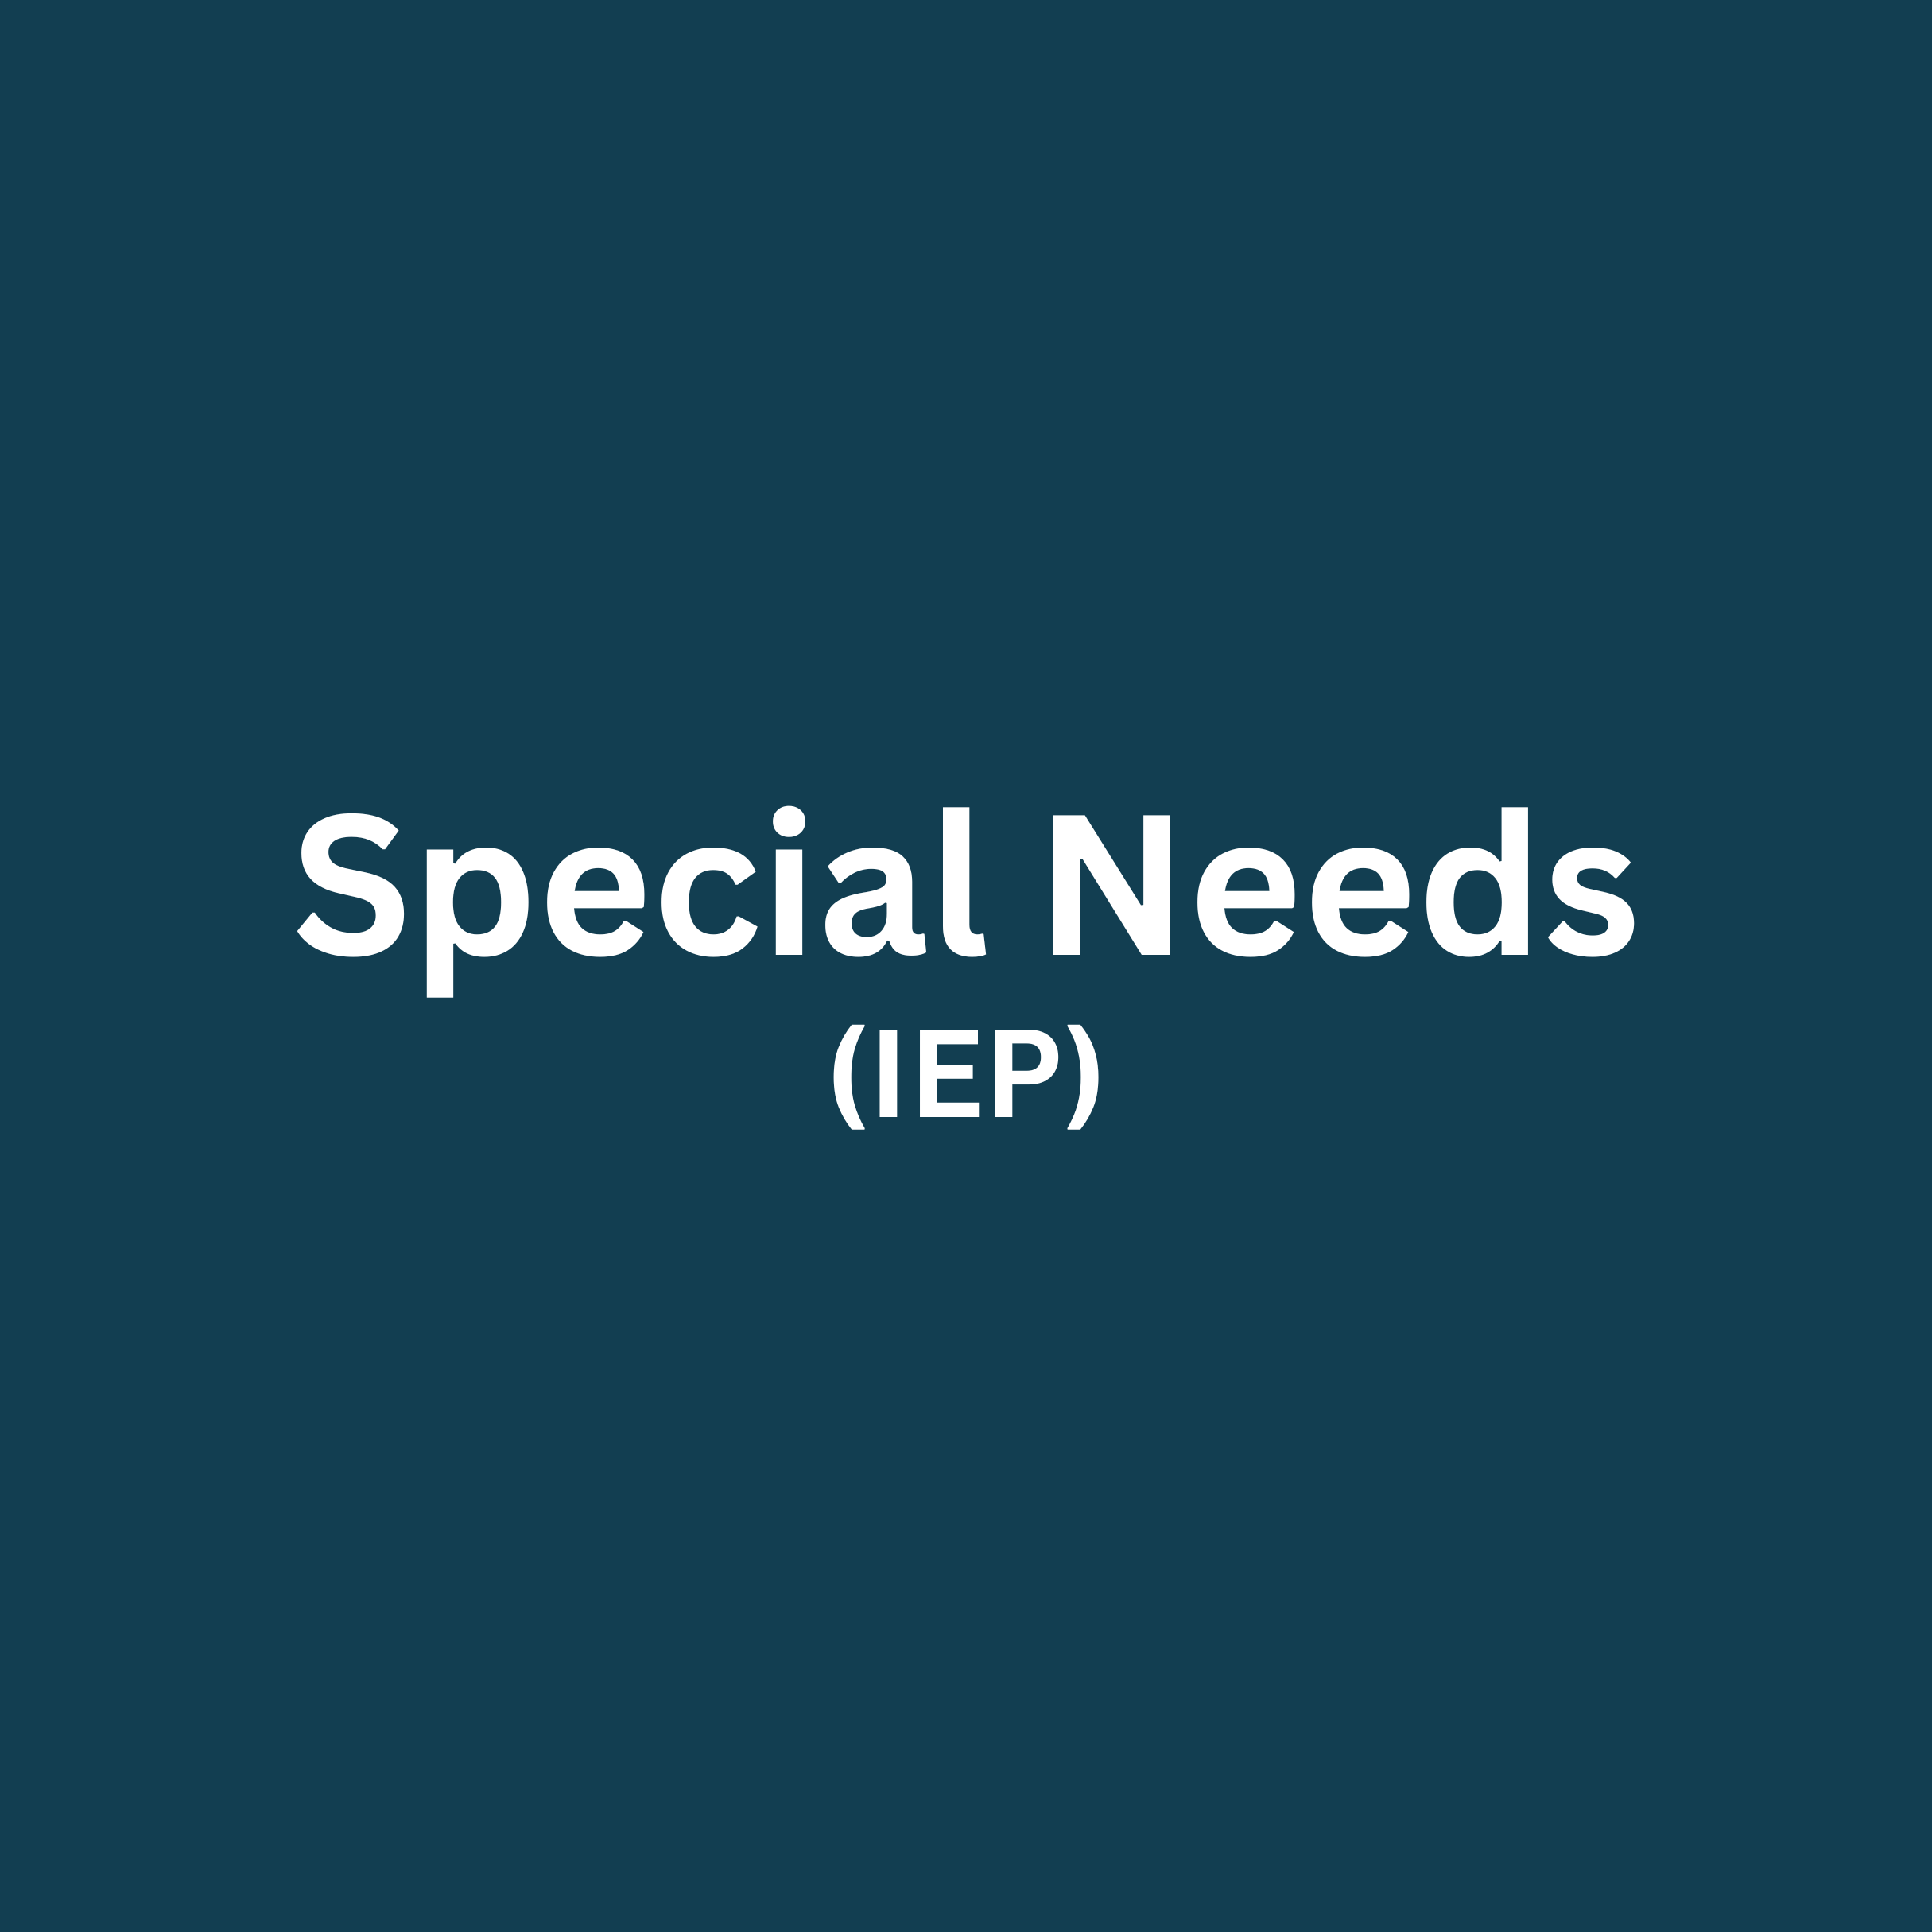 Special Needs (IEP)